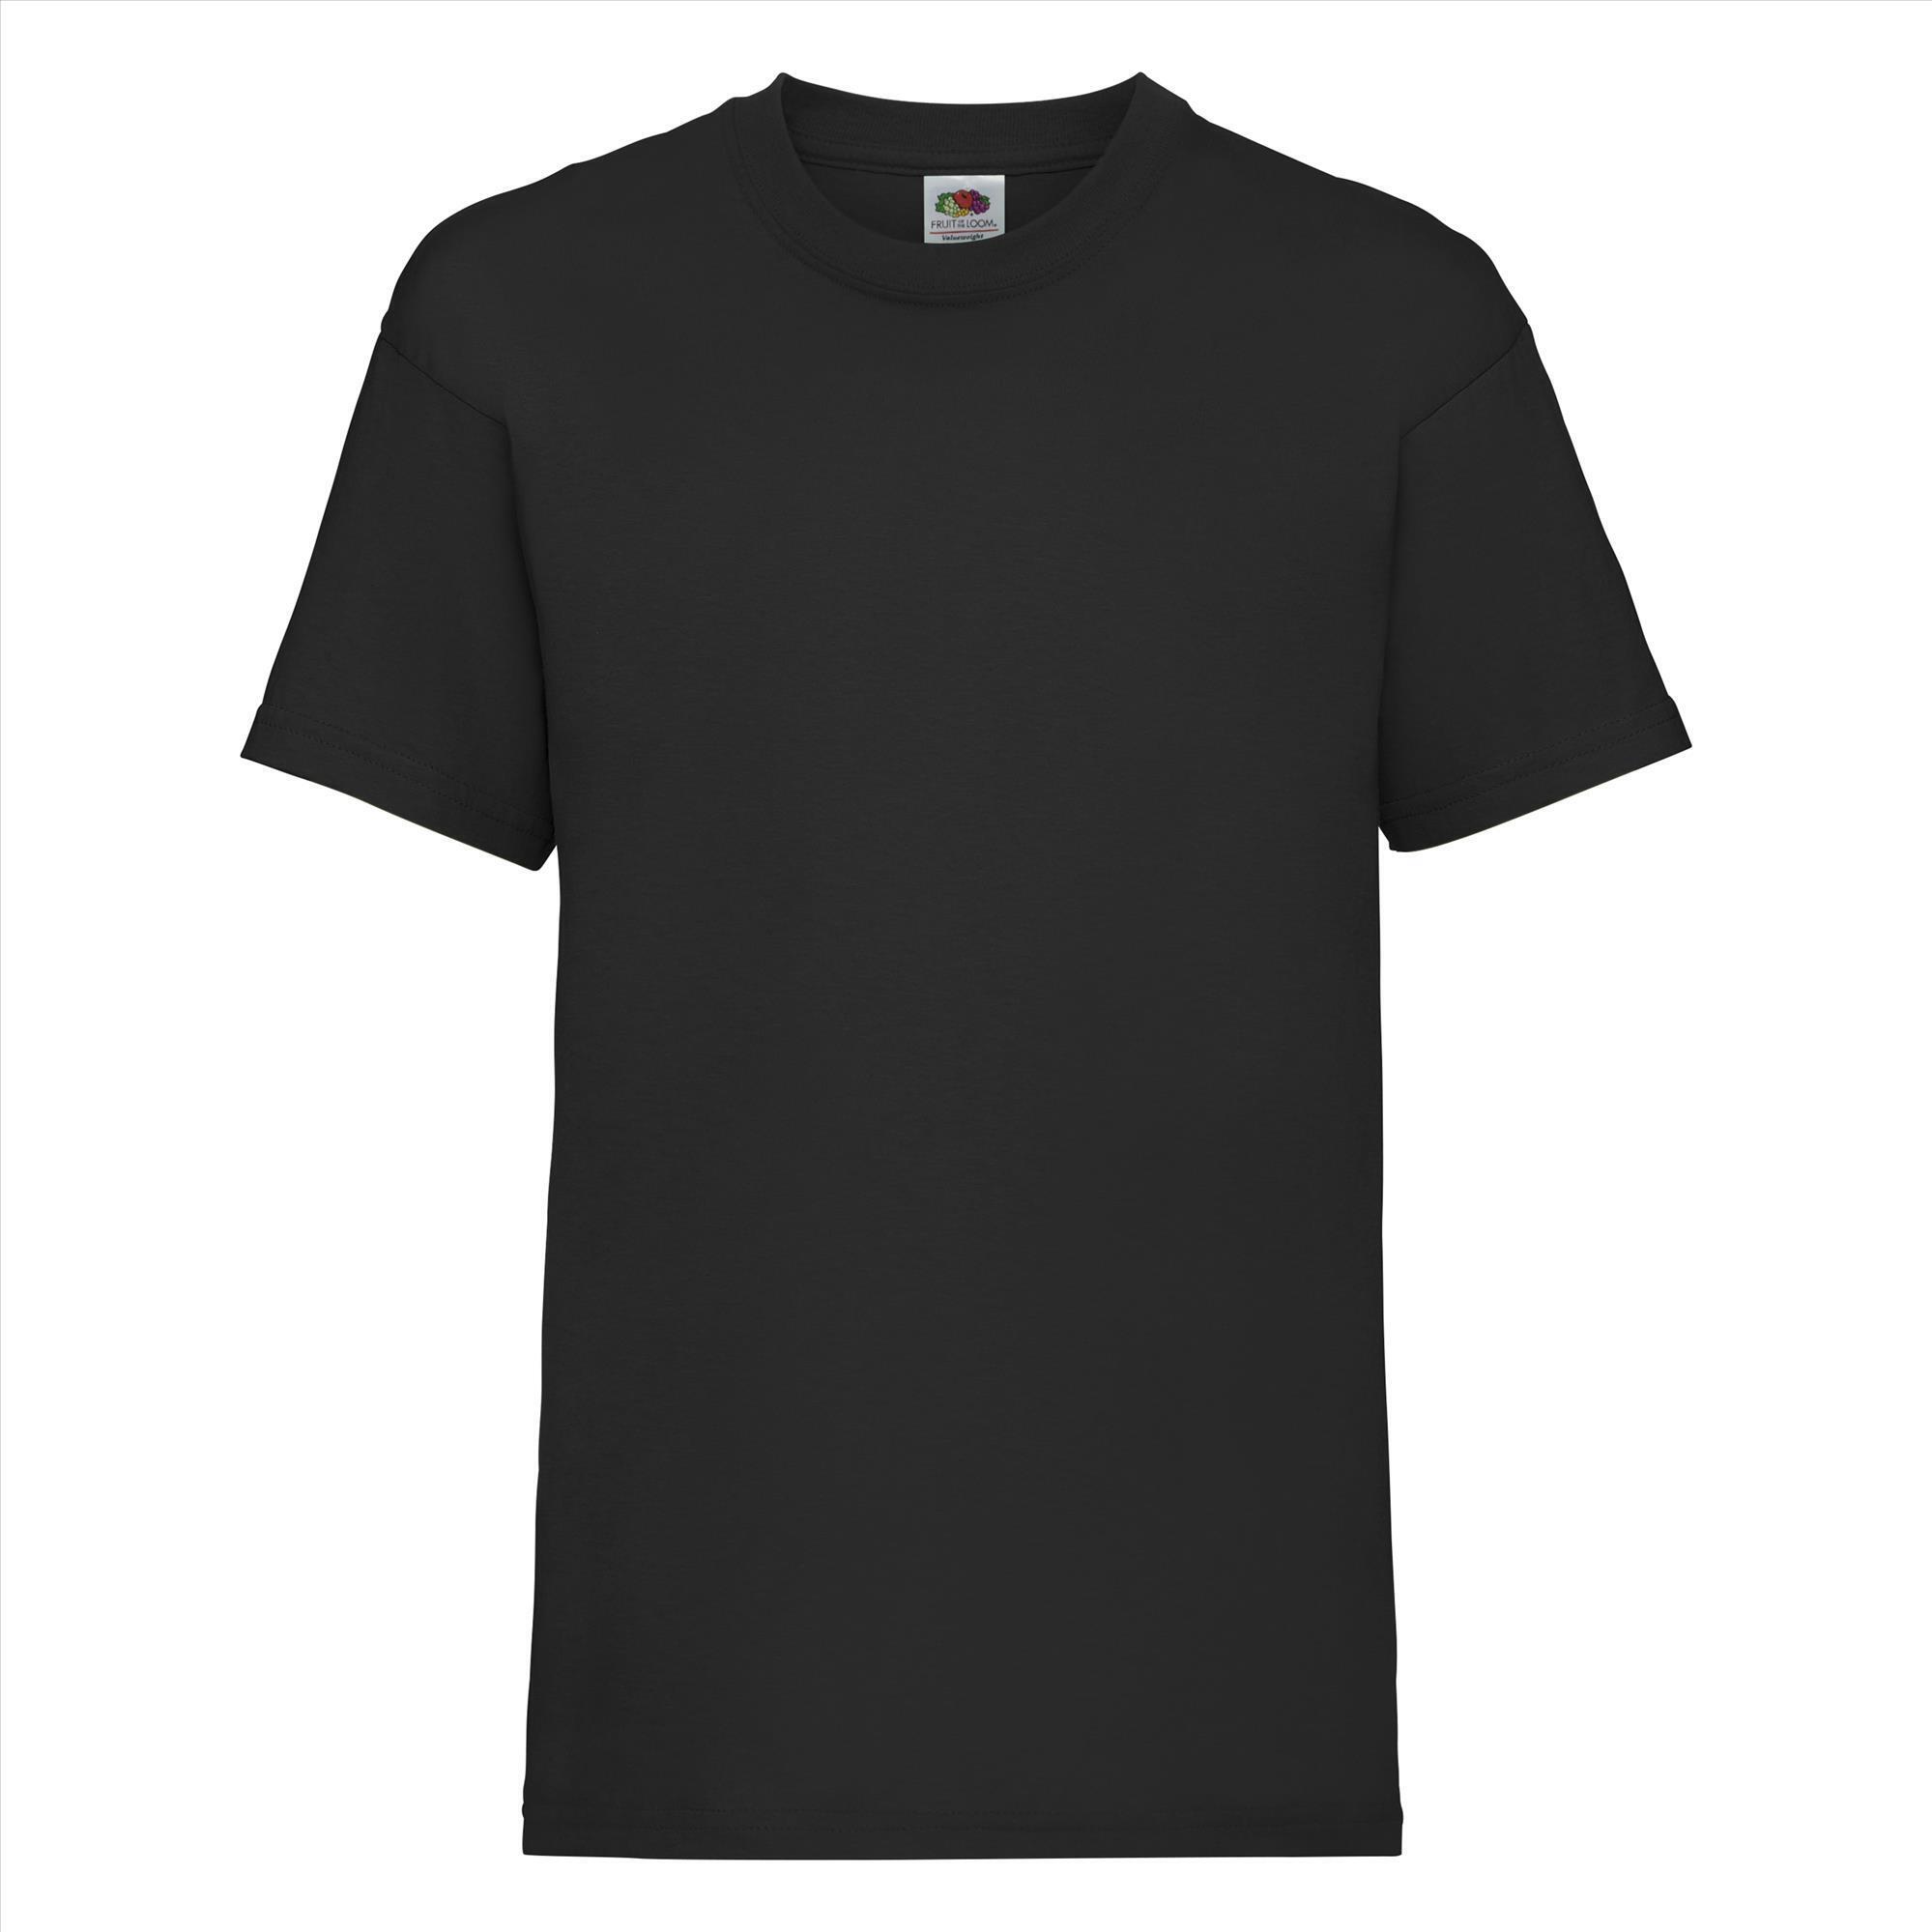 Gepersonaliseerde Kinder T-shirt zwart Kinderkleding bedrukken